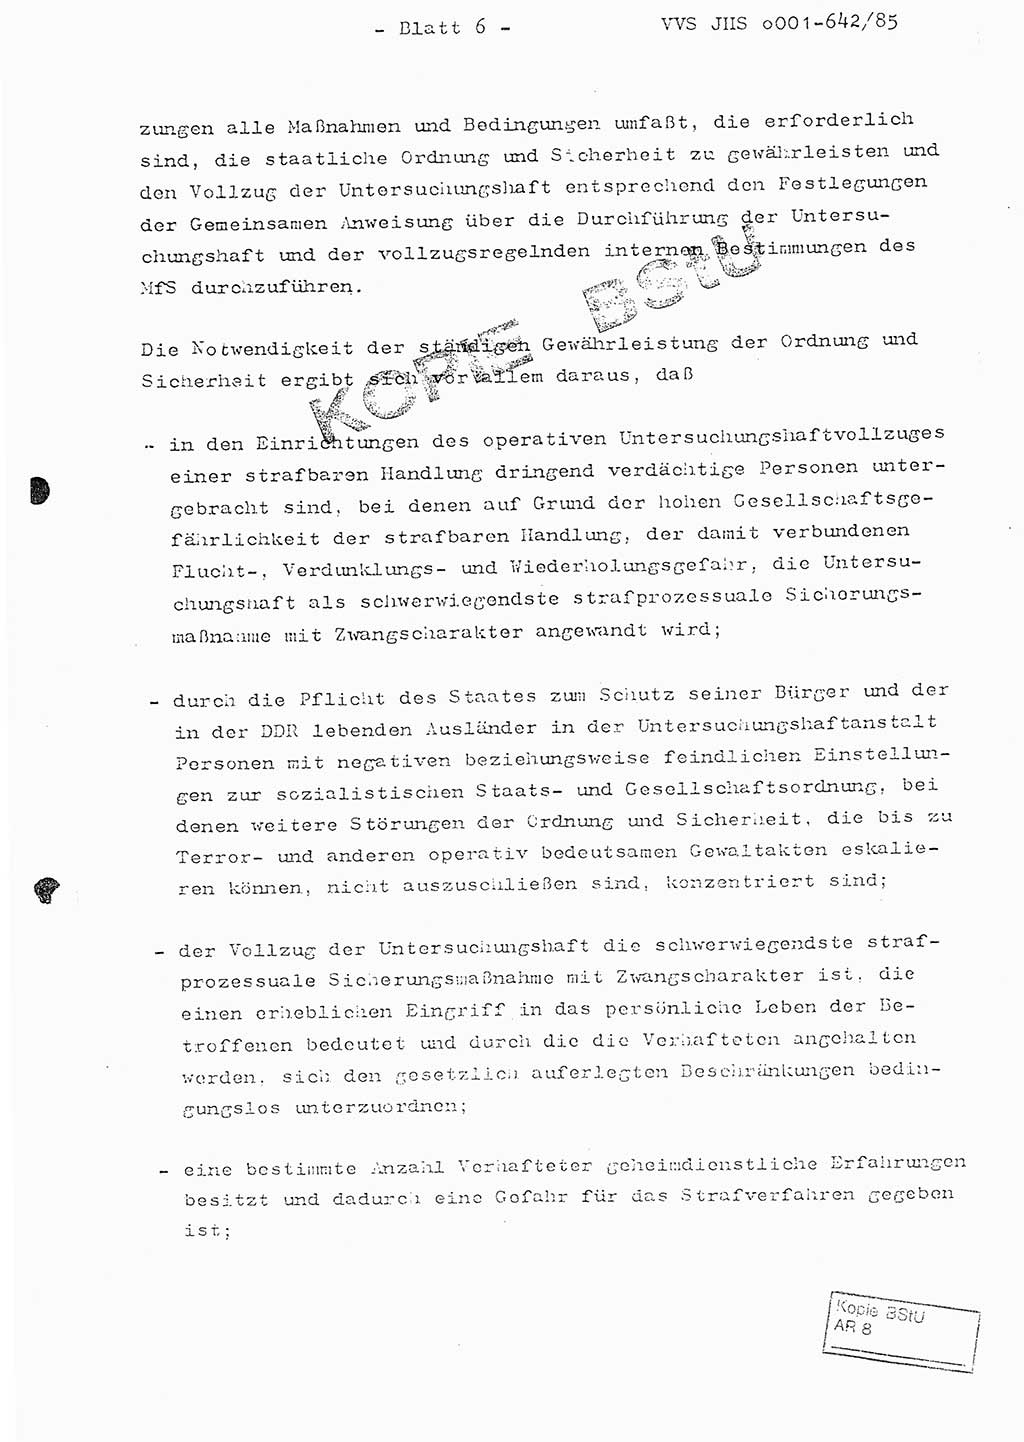 Fachschulabschlußarbeit Oberleutnant Lothar Fahland (Abt. ⅩⅣ), Ministerium für Staatssicherheit (MfS) [Deutsche Demokratische Republik (DDR)], Juristische Hochschule (JHS), Vertrauliche Verschlußsache (VVS) o001-642/85, Potsdam 1985, Blatt 6 (FS-Abschl.-Arb. MfS DDR JHS VVS o001-642/85 1985, Bl. 6)